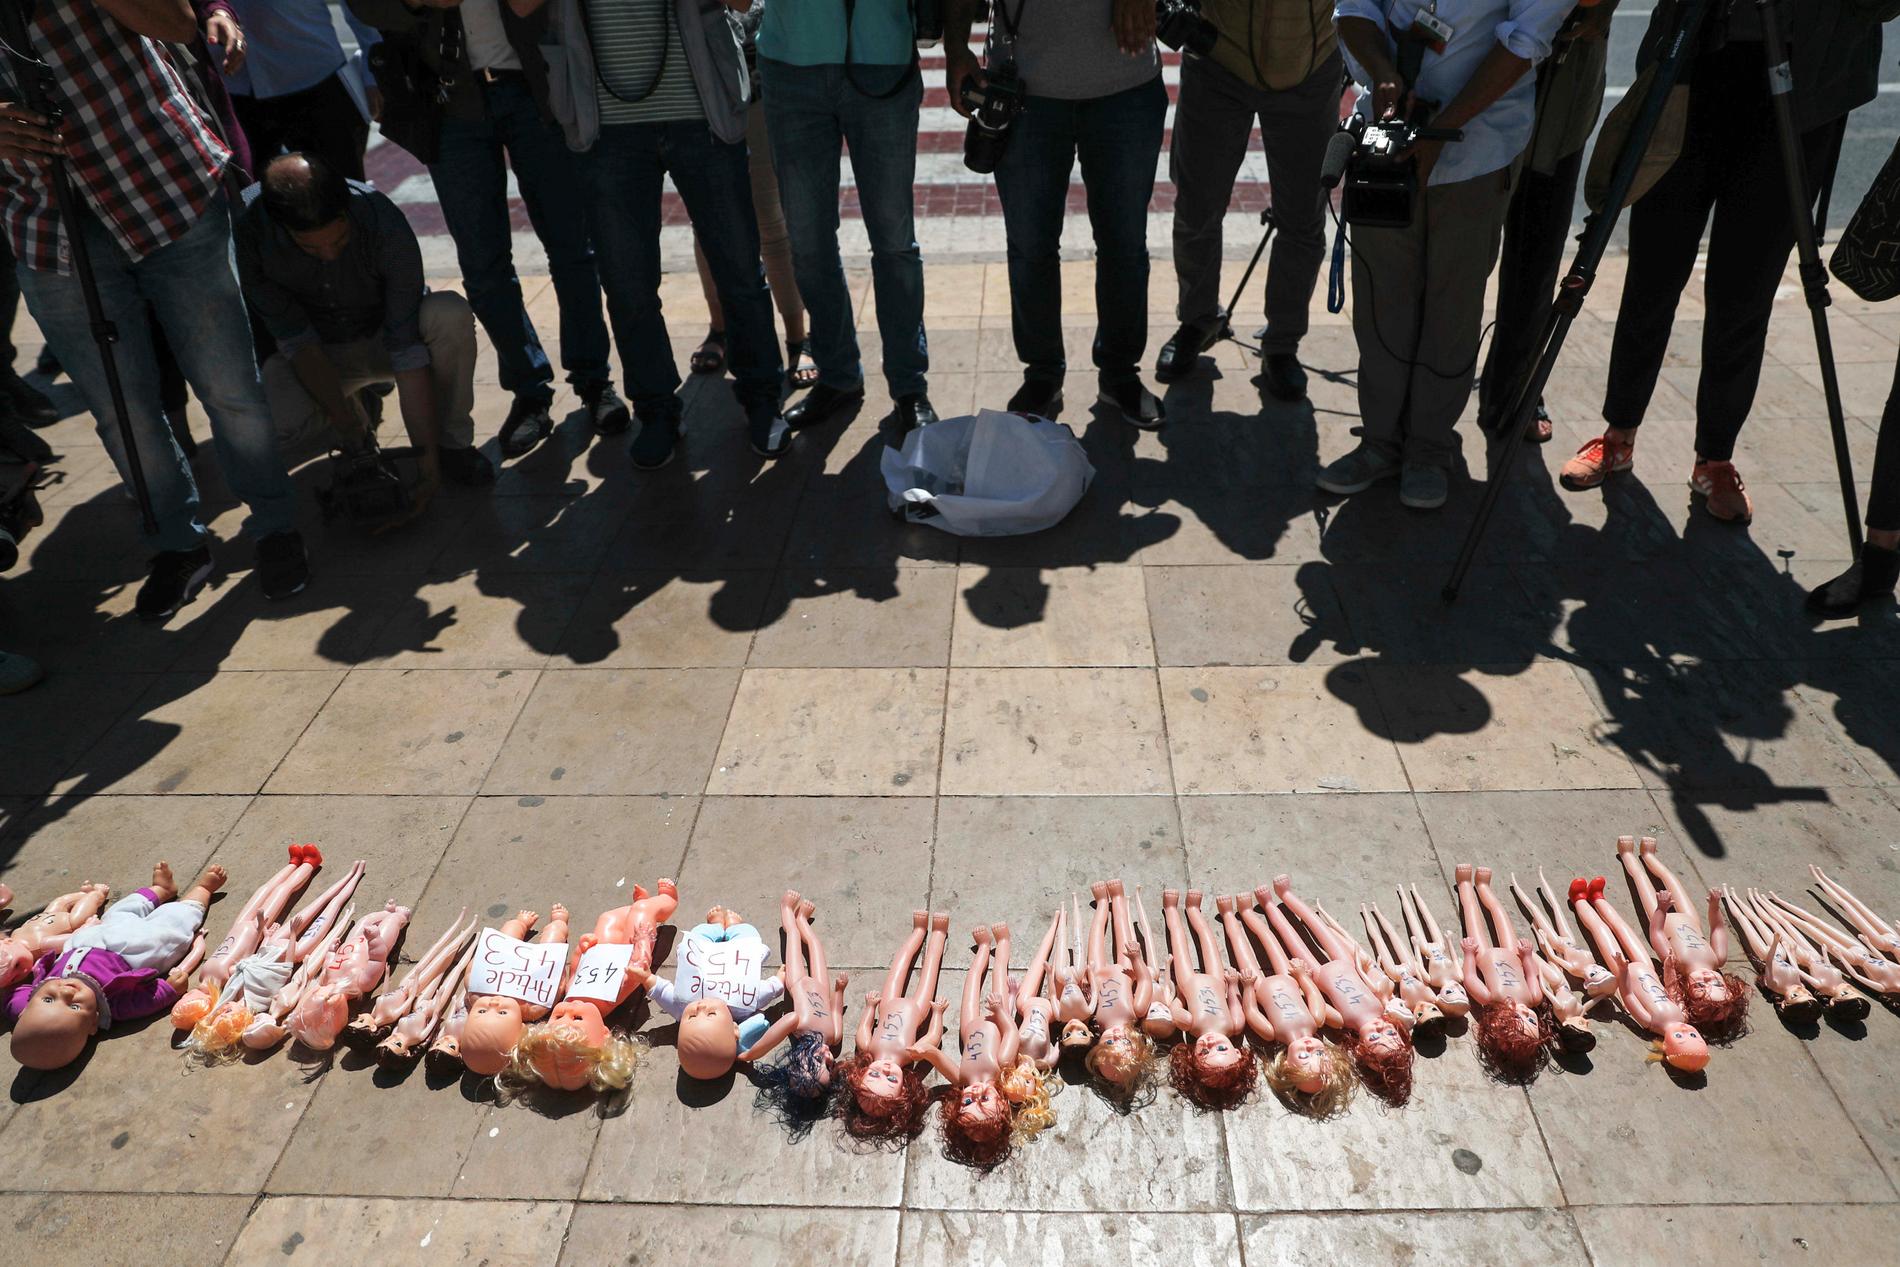 Dockor har lagts ut utanför parlamentet i Marockos huvudstad Rabat i protest mot landets abortlagar. Demonstranterna vill få igenom en lag som skyddar kvinnor från osäkra aborter. Bilden är från i juni i år.